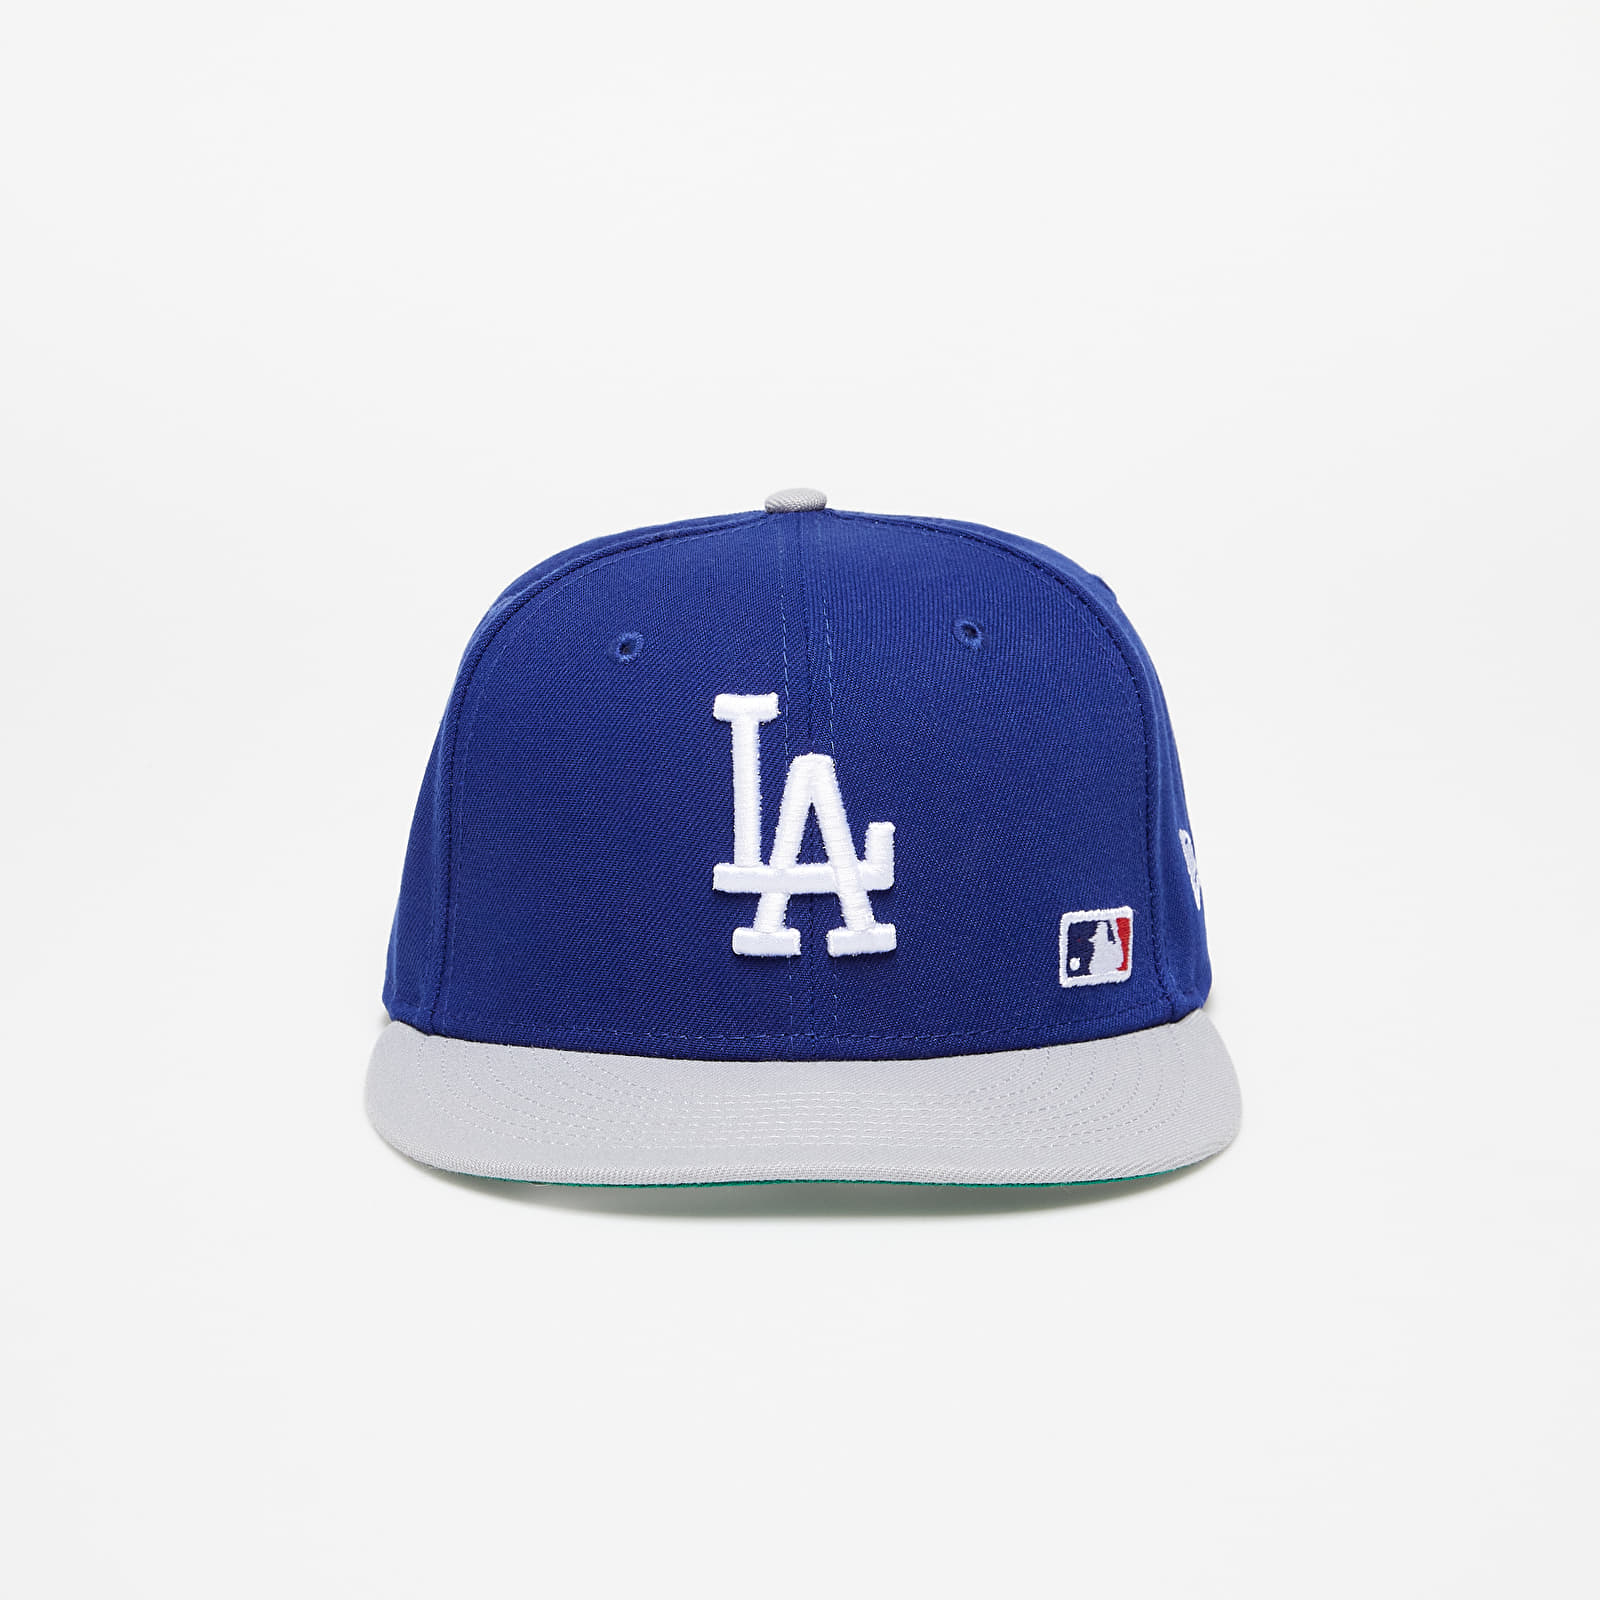 Caps New Era Los Angeles Dodgers Team Arch 9FIFTY Snapback Cap